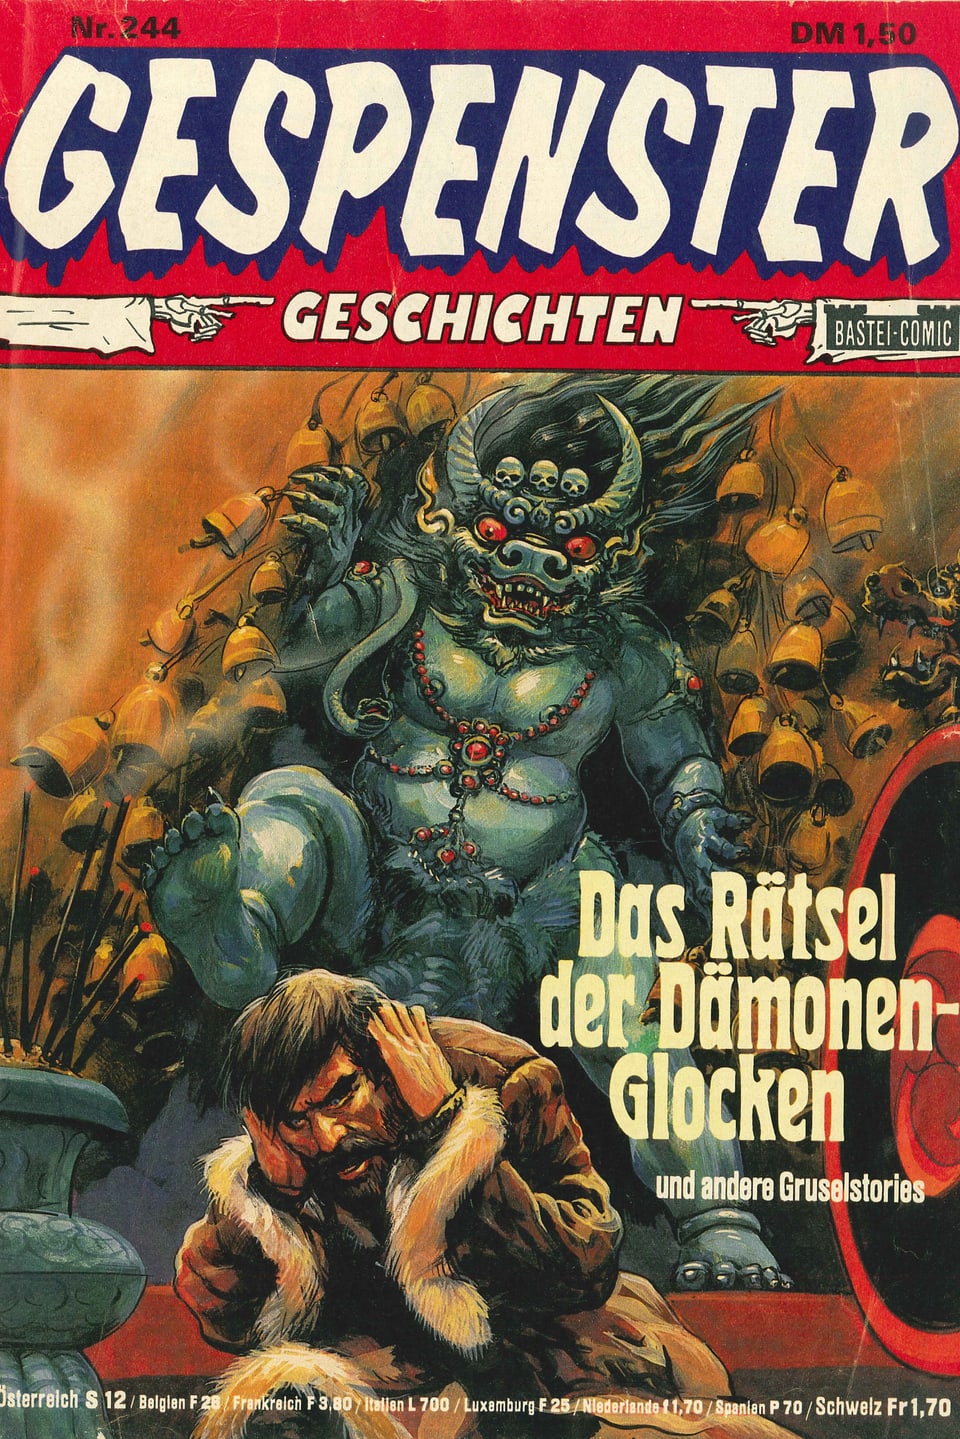 Cover des Comics: Ein Dämon mit Hörnern und roten Augen bedroht einen Mann.